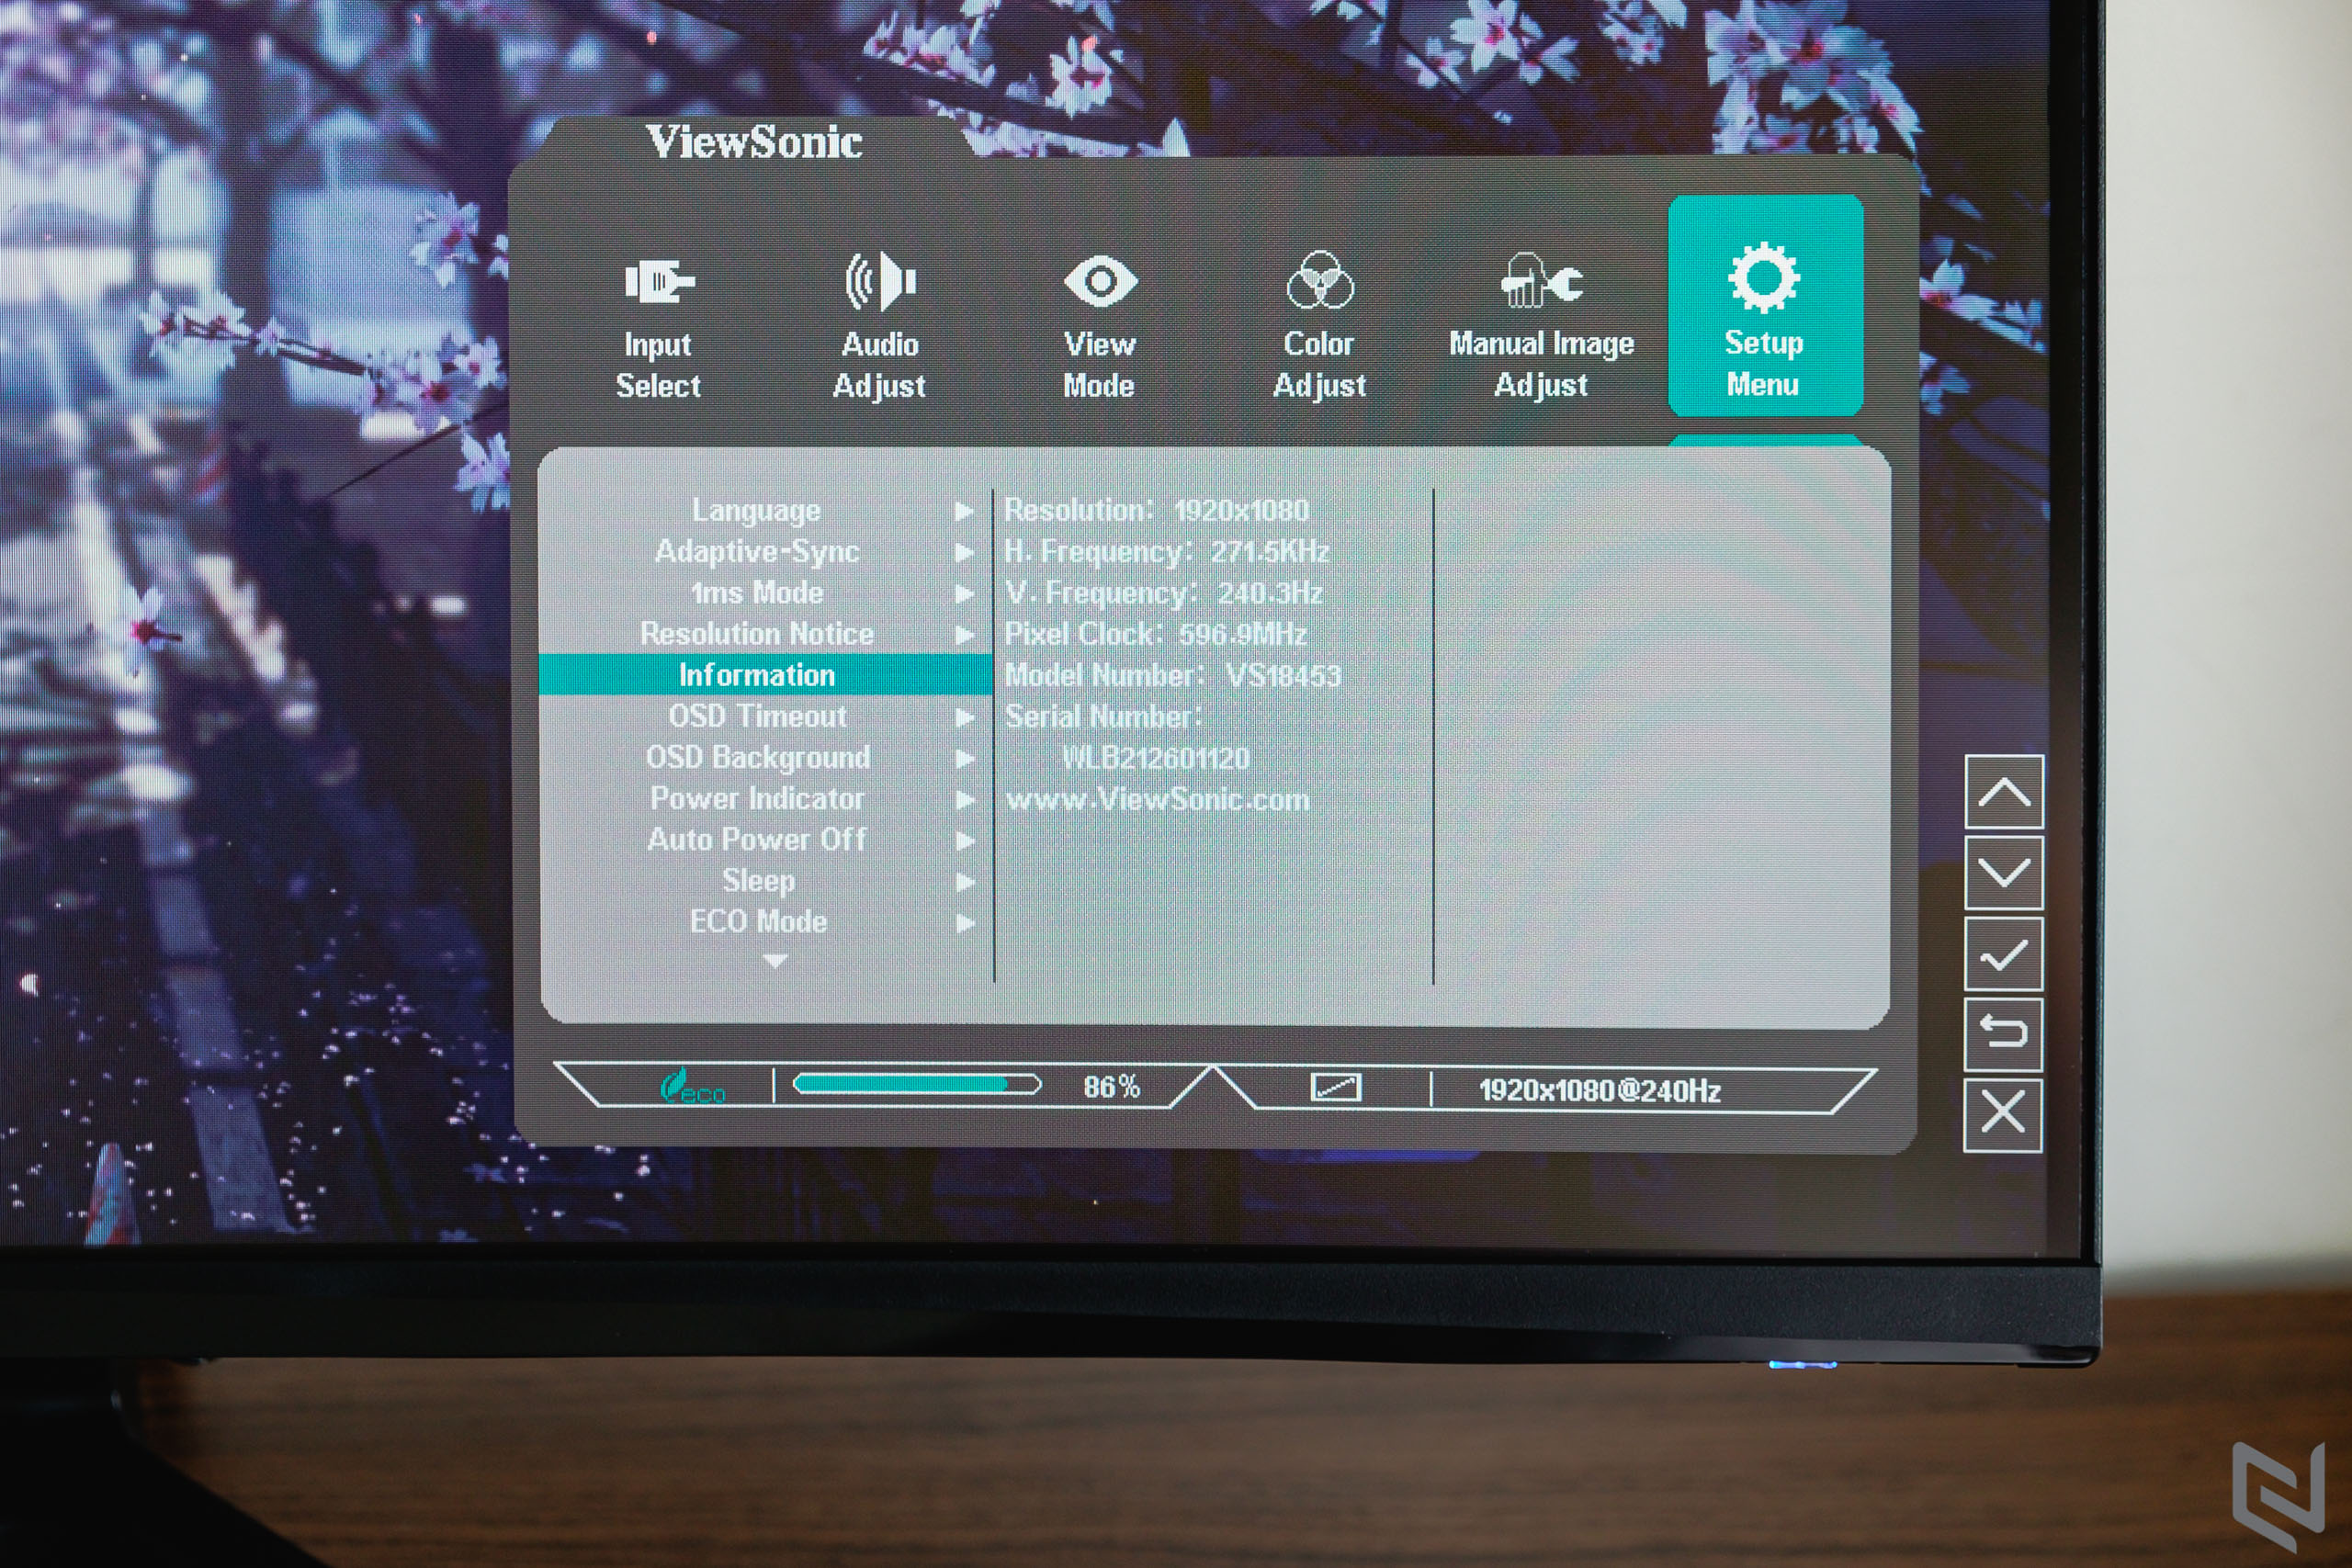 Đánh giá màn hình cong chơi game ViewSonic VX3219-PC-MHD: Màn to, tần số quét siêu nhanh với giá tốt luôn rất hấp dẫn